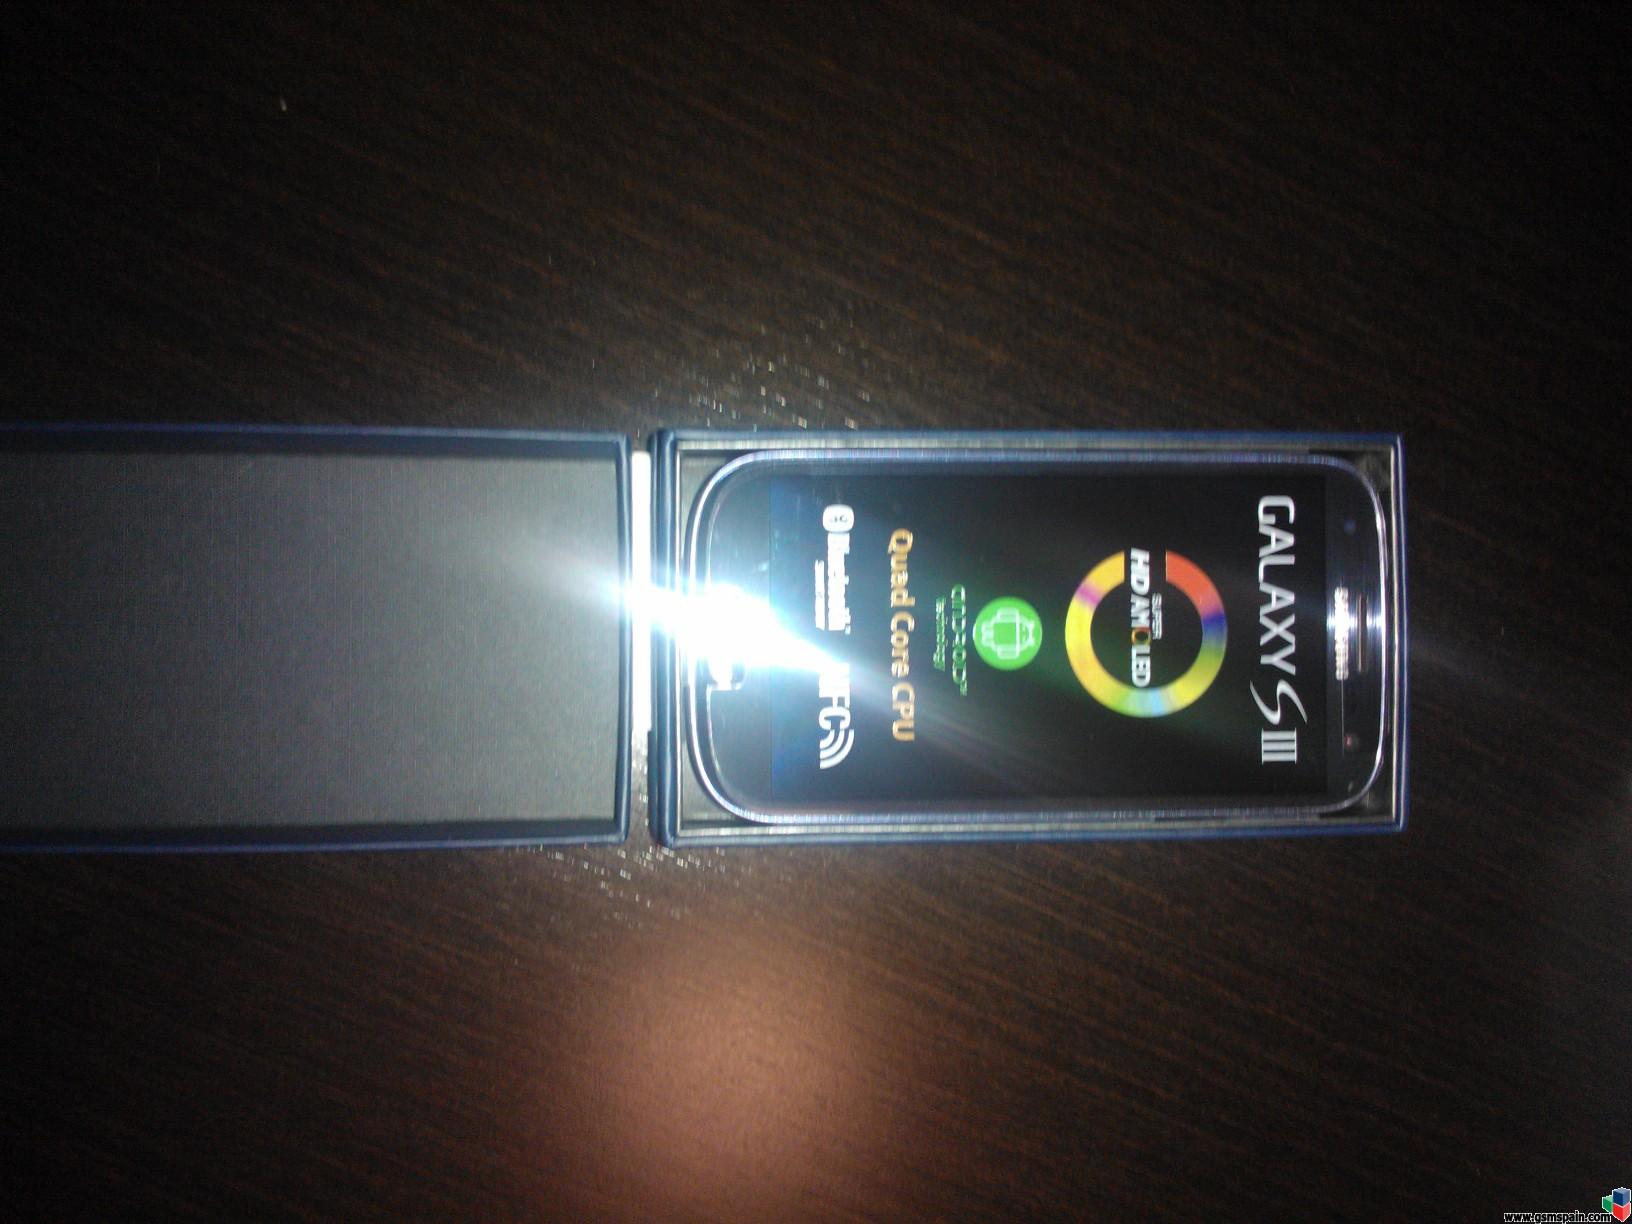 [VENDO] Samsung Galaxy S3 Blue liberado+factura REBAJADO